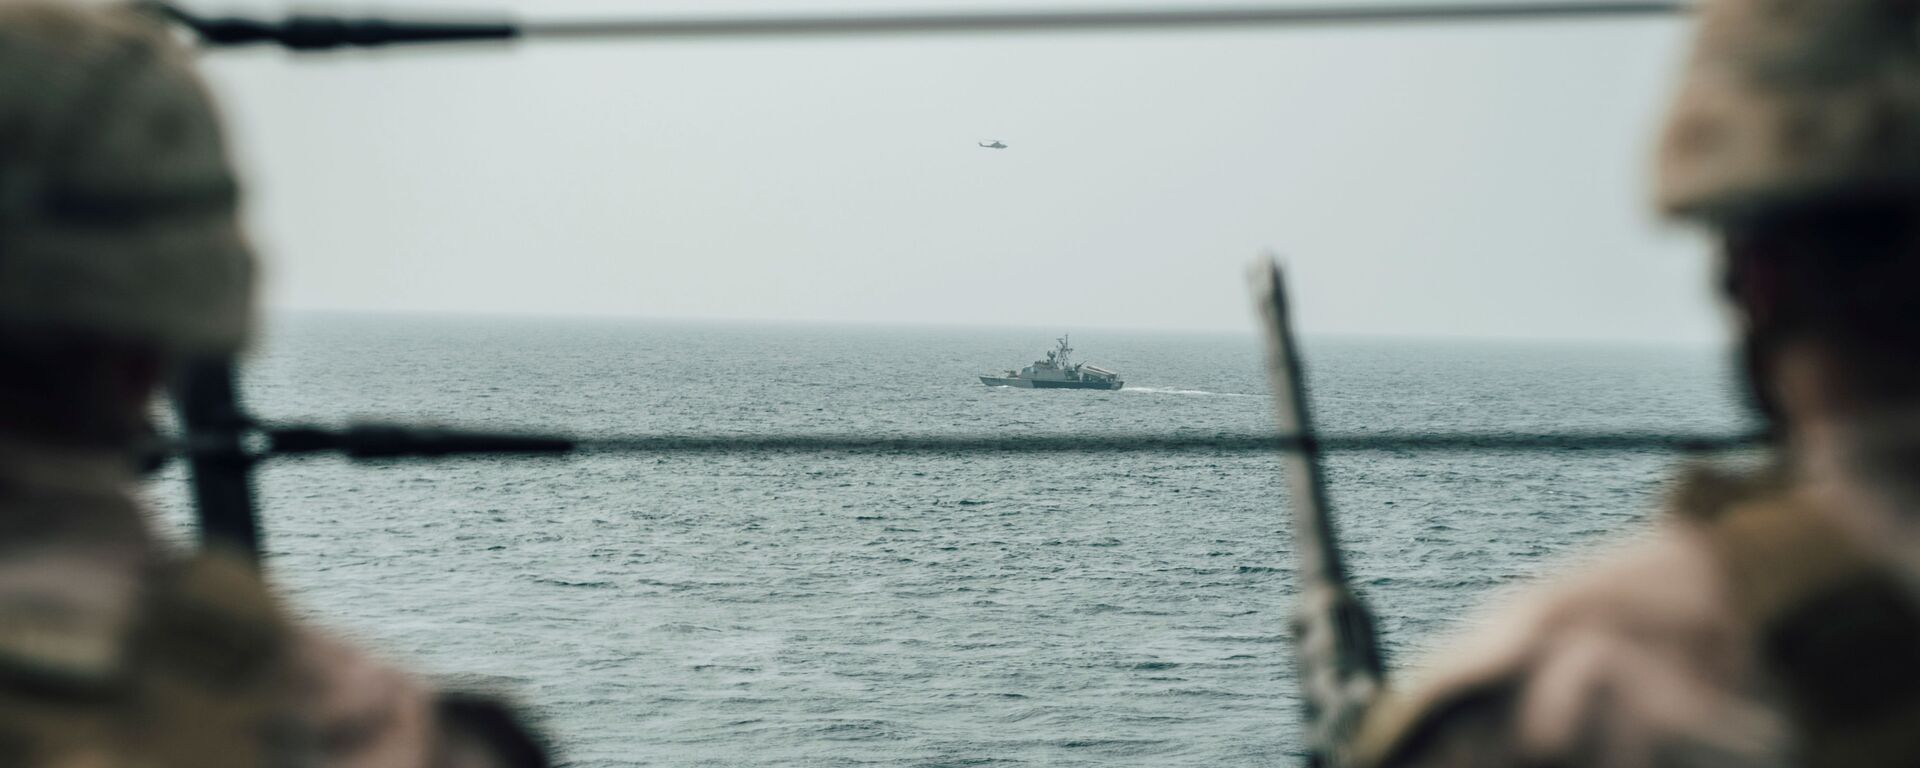 جندي من مشاة البحرية الأمريكية يراقب طائرة إيرانية هجومية من سفينة حربية أمريكية جون مورثا خلال مضيق هرمز في بحر العرب قبالة عُمان، 18 يوليو/ تموز 2019 - سبوتنيك عربي, 1920, 19.03.2021